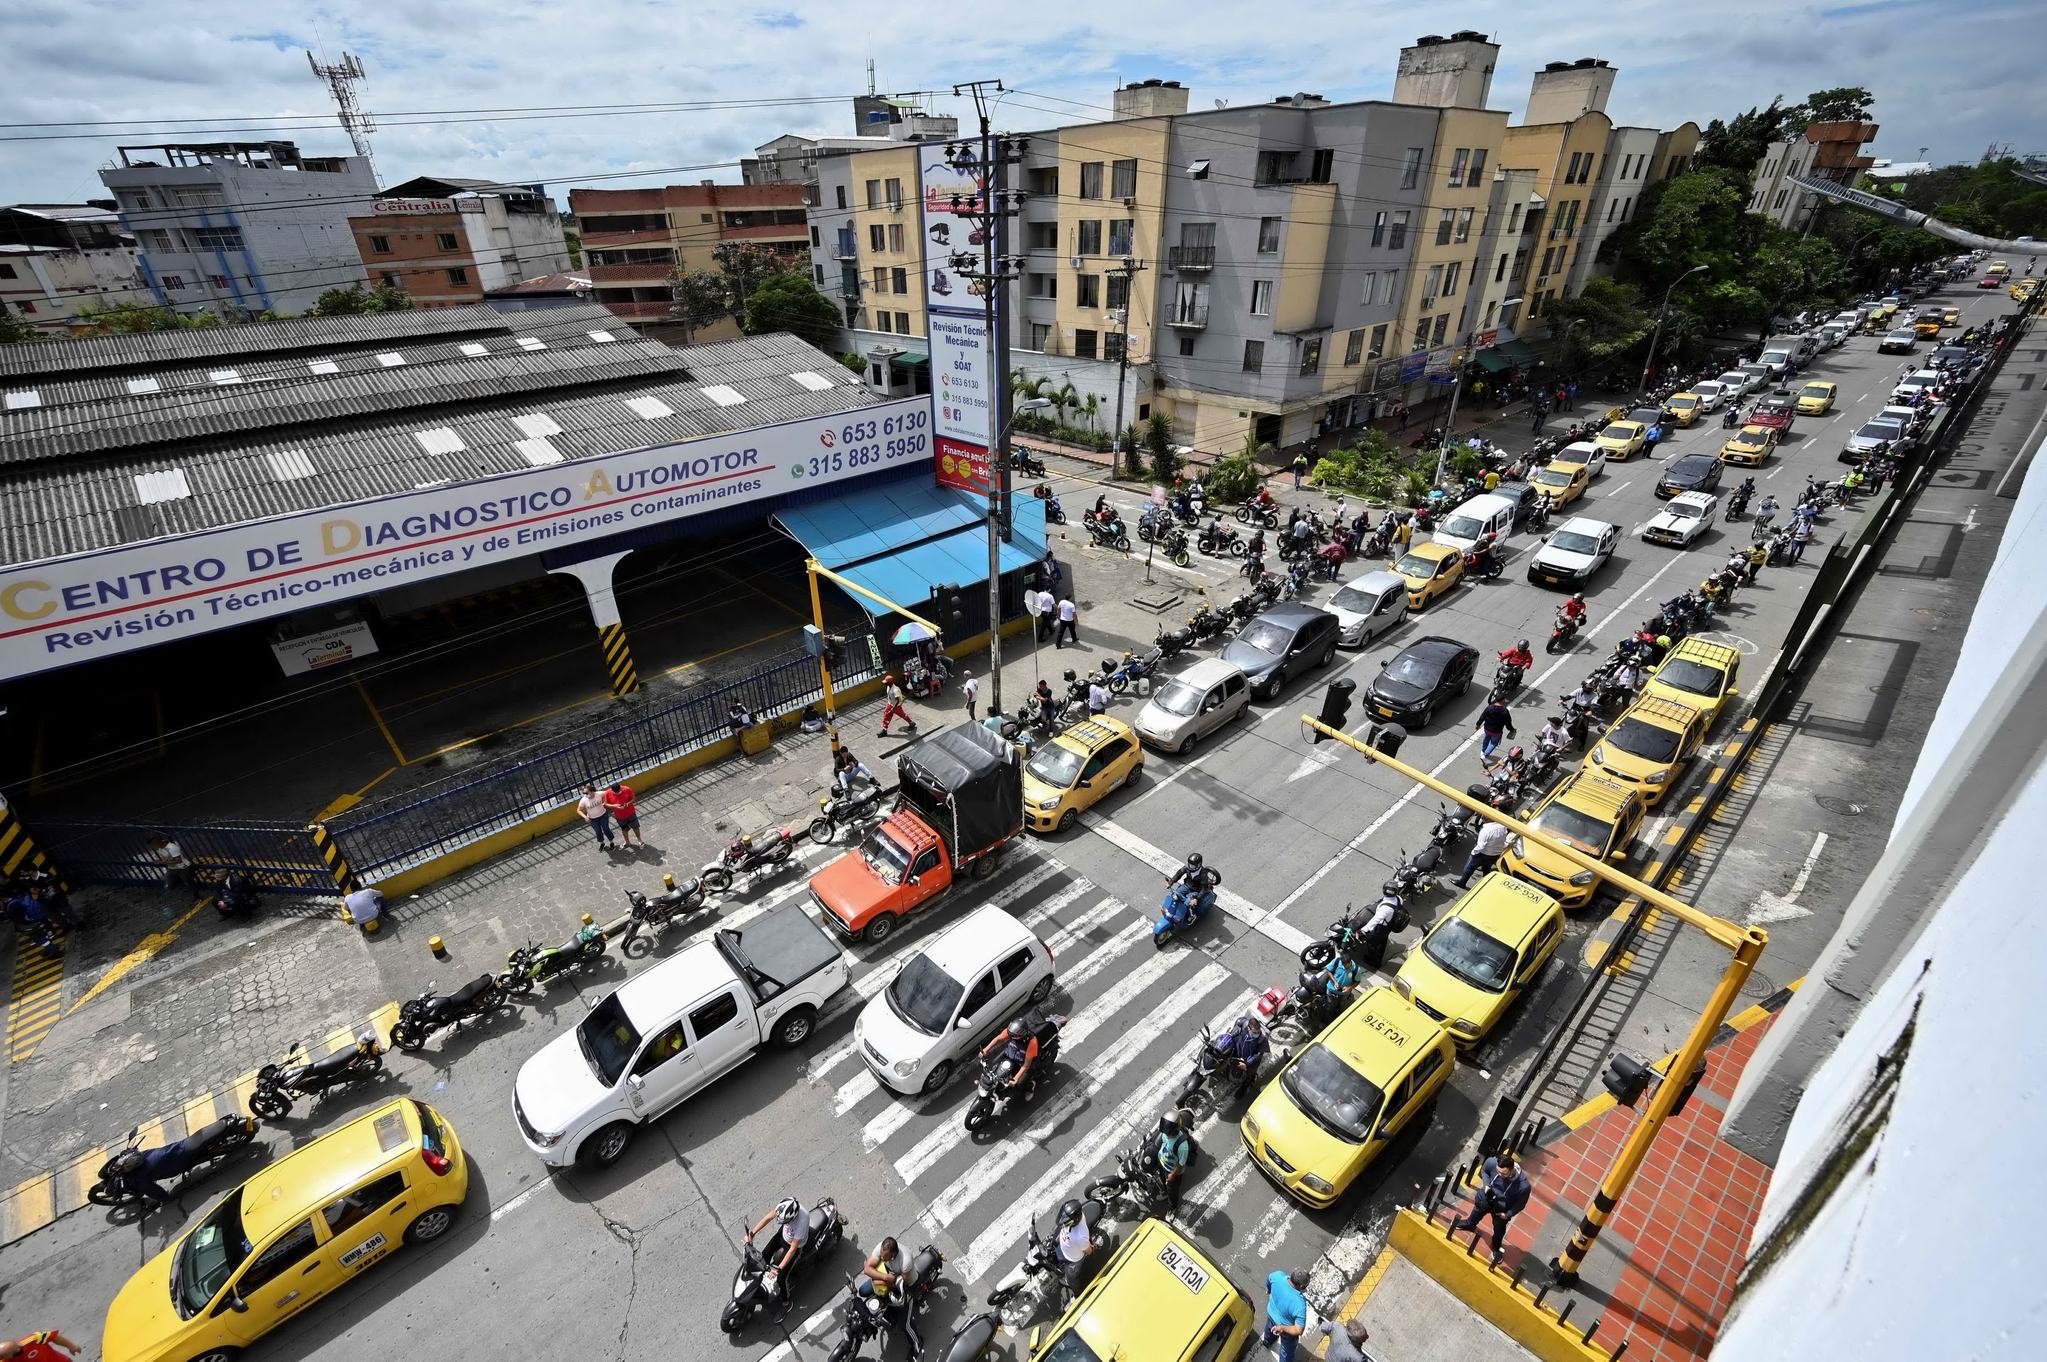 칼리의 시민들이 4일 자동차 기름을 넣기 위해 길게 줄 서 있다. 시위가 며칠째 계속되면서 콜롬비아에서는 휘발유 공급이 부족해졌다. AFP=연합뉴스